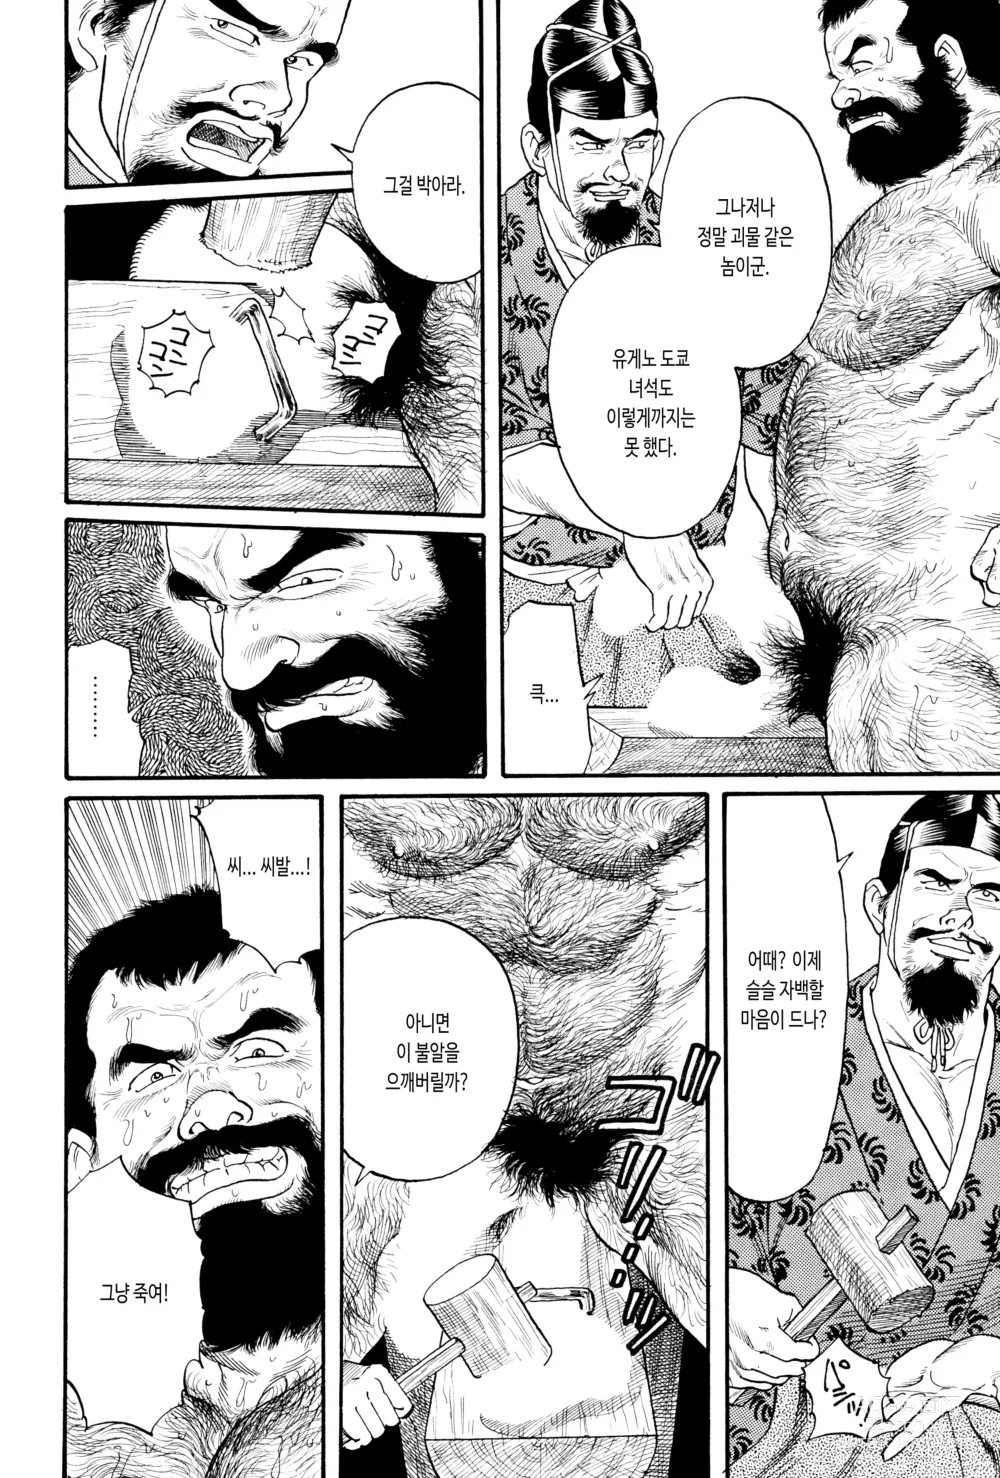 Page 24 of manga 코로모가와 이야기